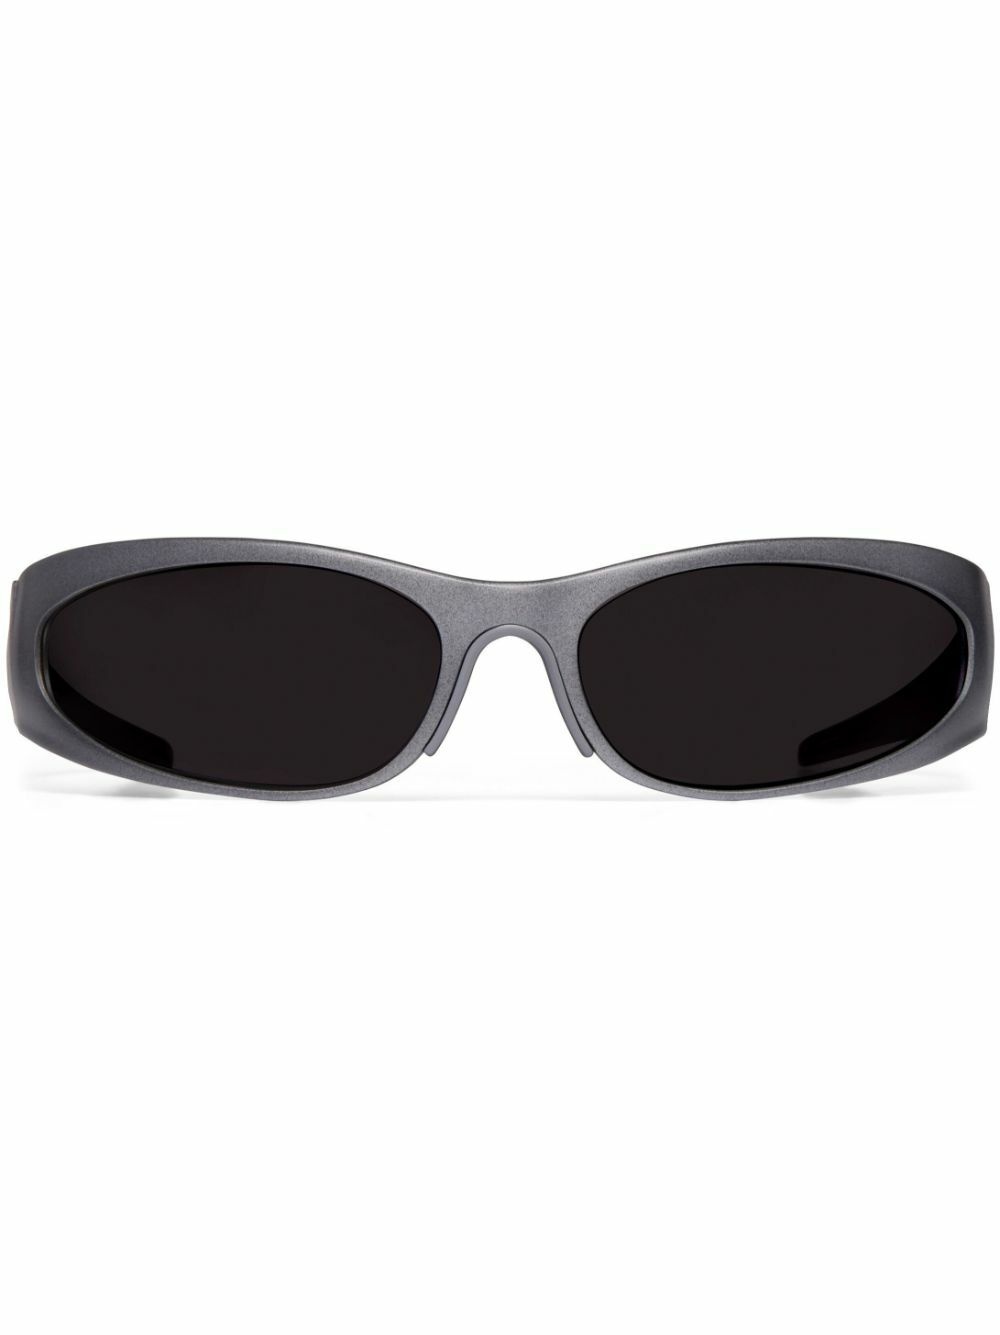 BALENCIAGA - Sunglasses Balenciaga